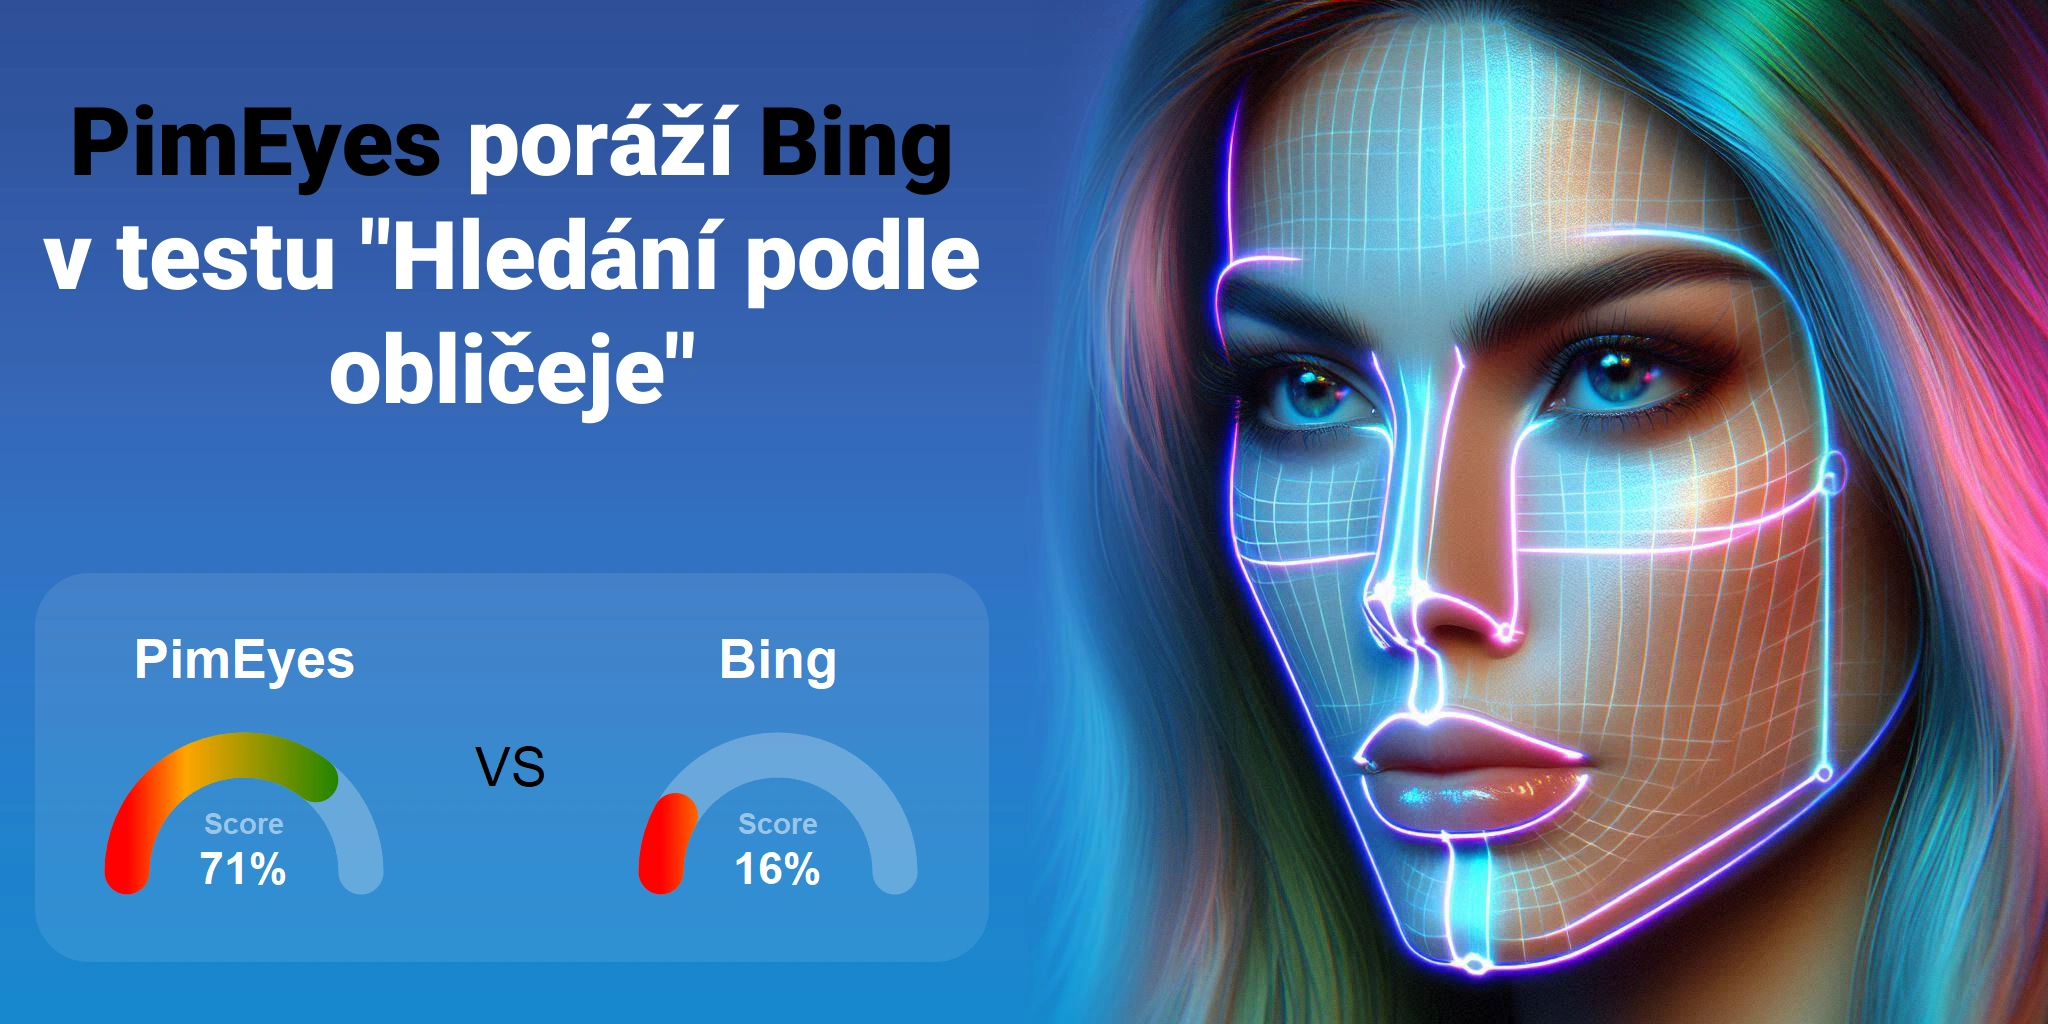 PimEyes.com vs Bing.com